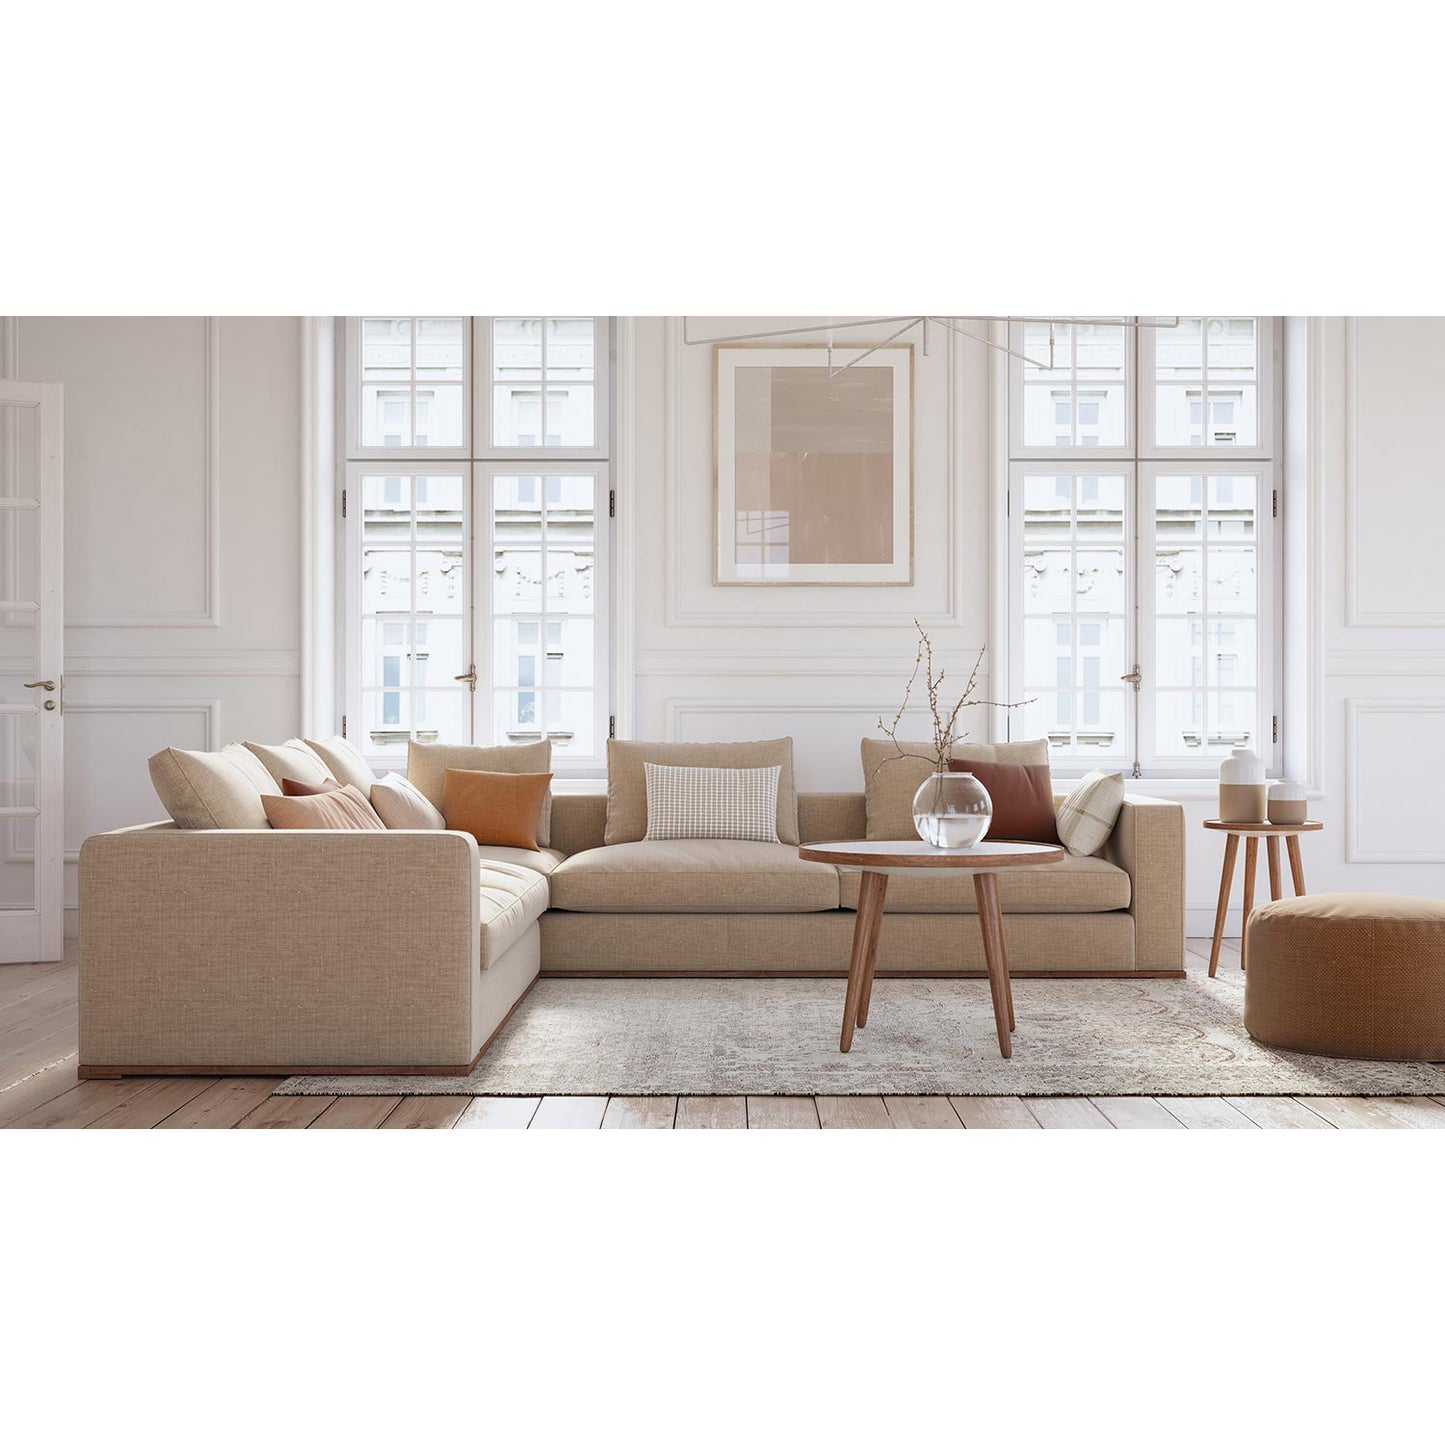 Corner sofa -multiple sizes - KEY01